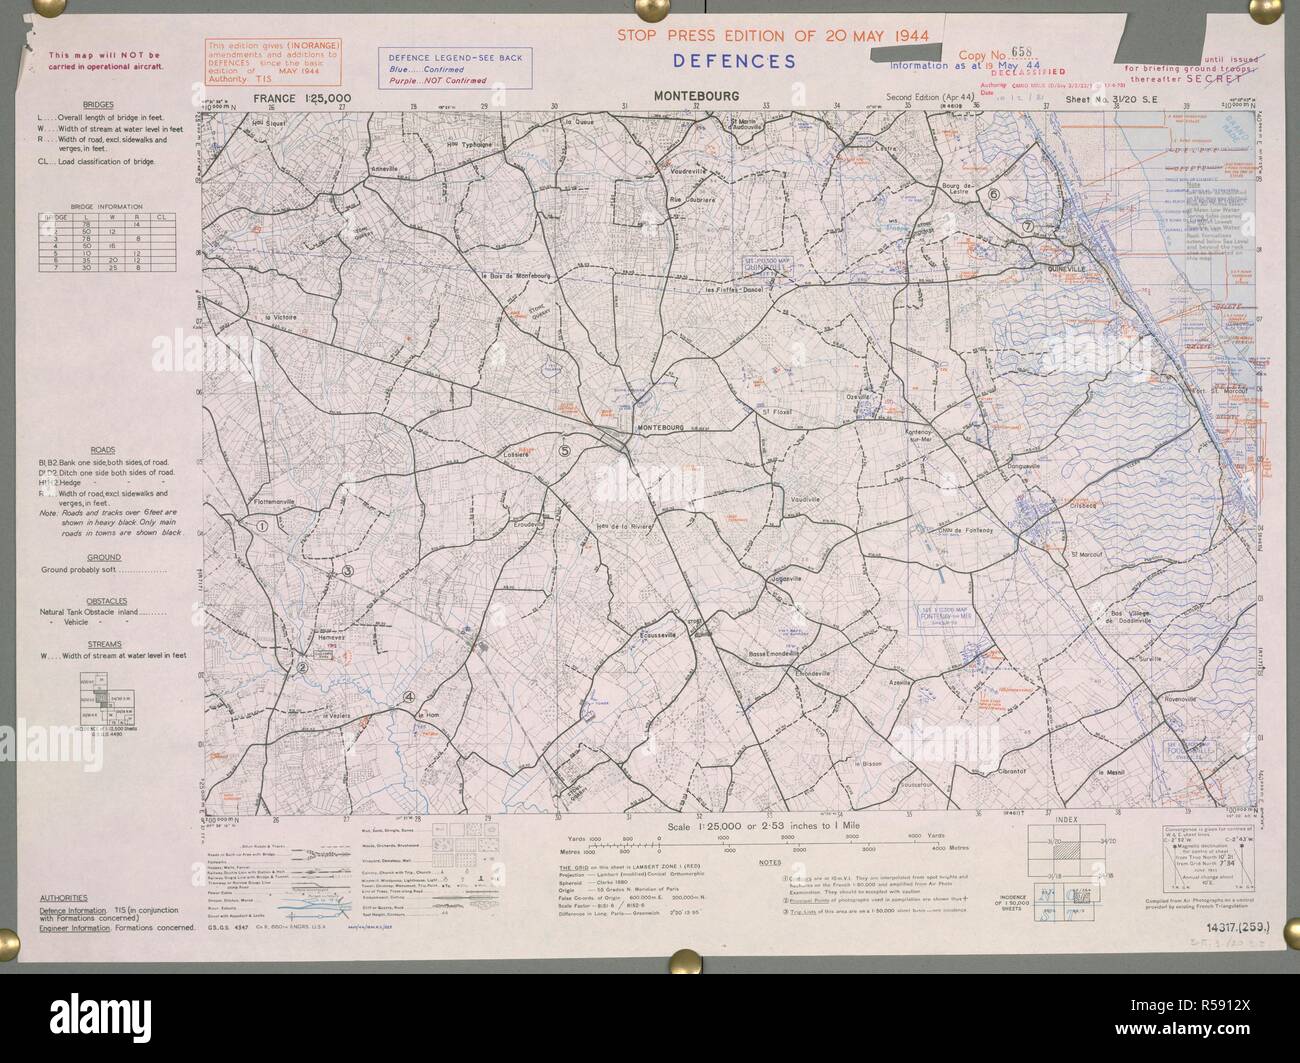 Montebourg, France. Une carte de la Seconde Guerre mondiale. Montebourg a été libéré le 19 juin 1944. . France 1:25 000 Défenses, Bigot. [Paris] : Bureau de la guerre, 1944. Source : Maps 14317.(259.) 31-20 SE. Banque D'Images